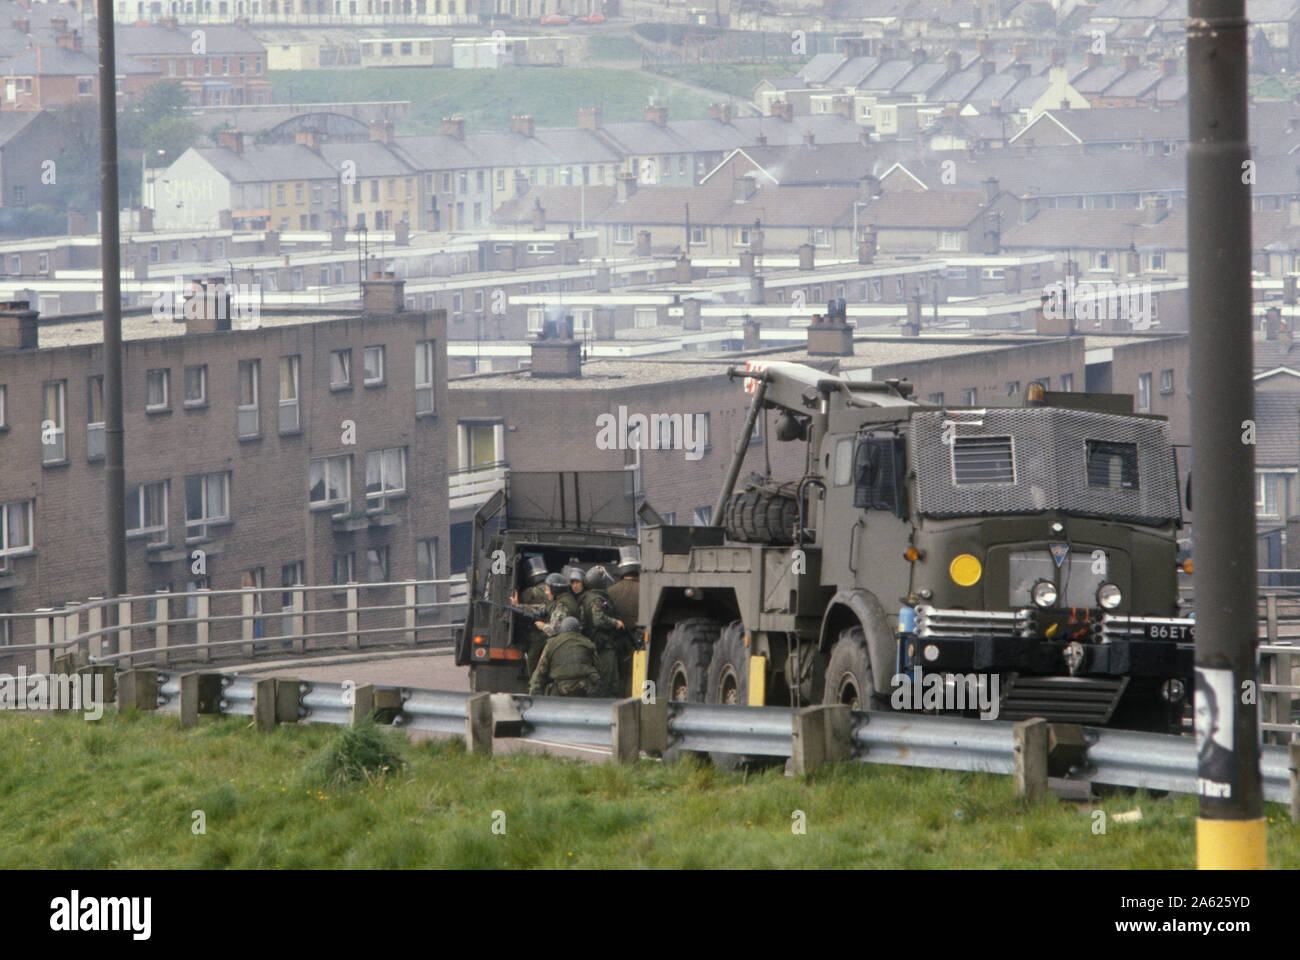 Les troubles des années 1980, l'Irlande du Nord Londonderry Derry 1981 soldats britanniques en patrouille en véhicule blindé sous le feu 80s HOMER SYKES Banque D'Images